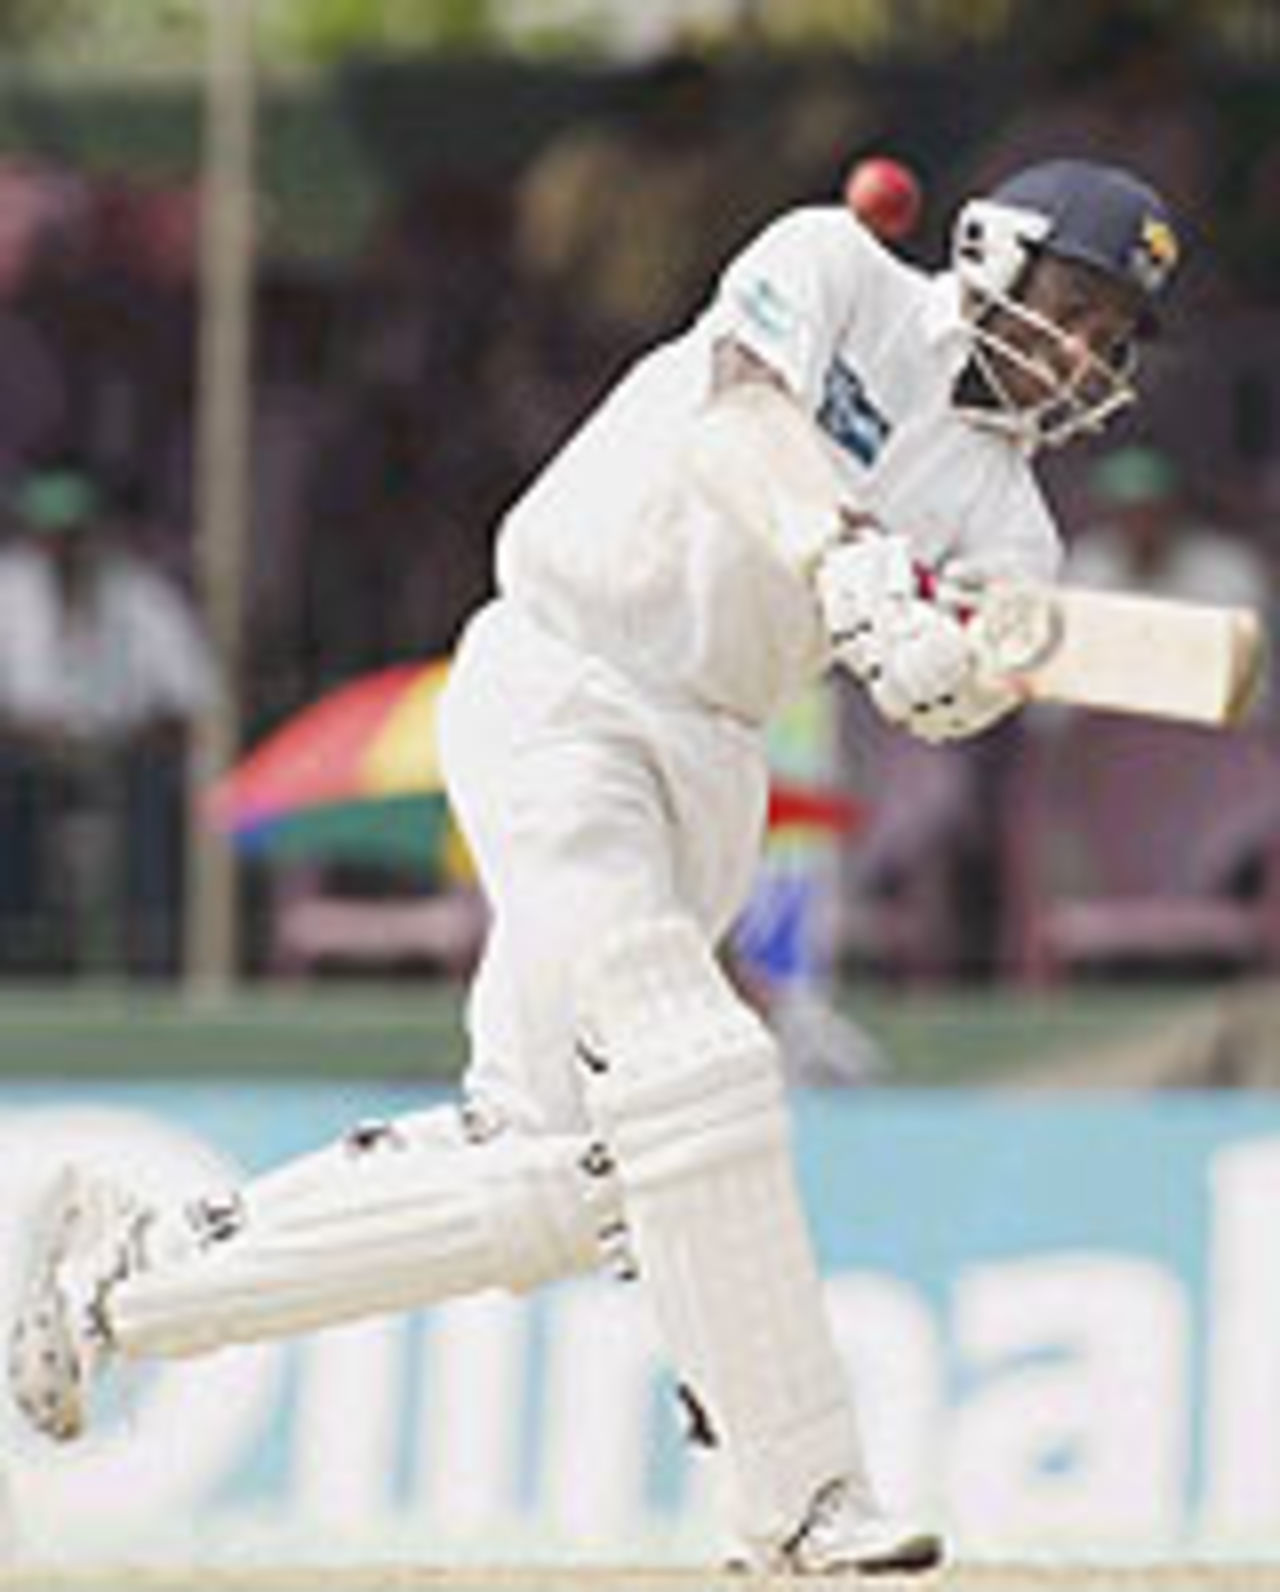 Sanath Jayasuriya hits out, Sri Lanka v Australia, 3rd Test, Colombo, 2nd day, March 25, 2004